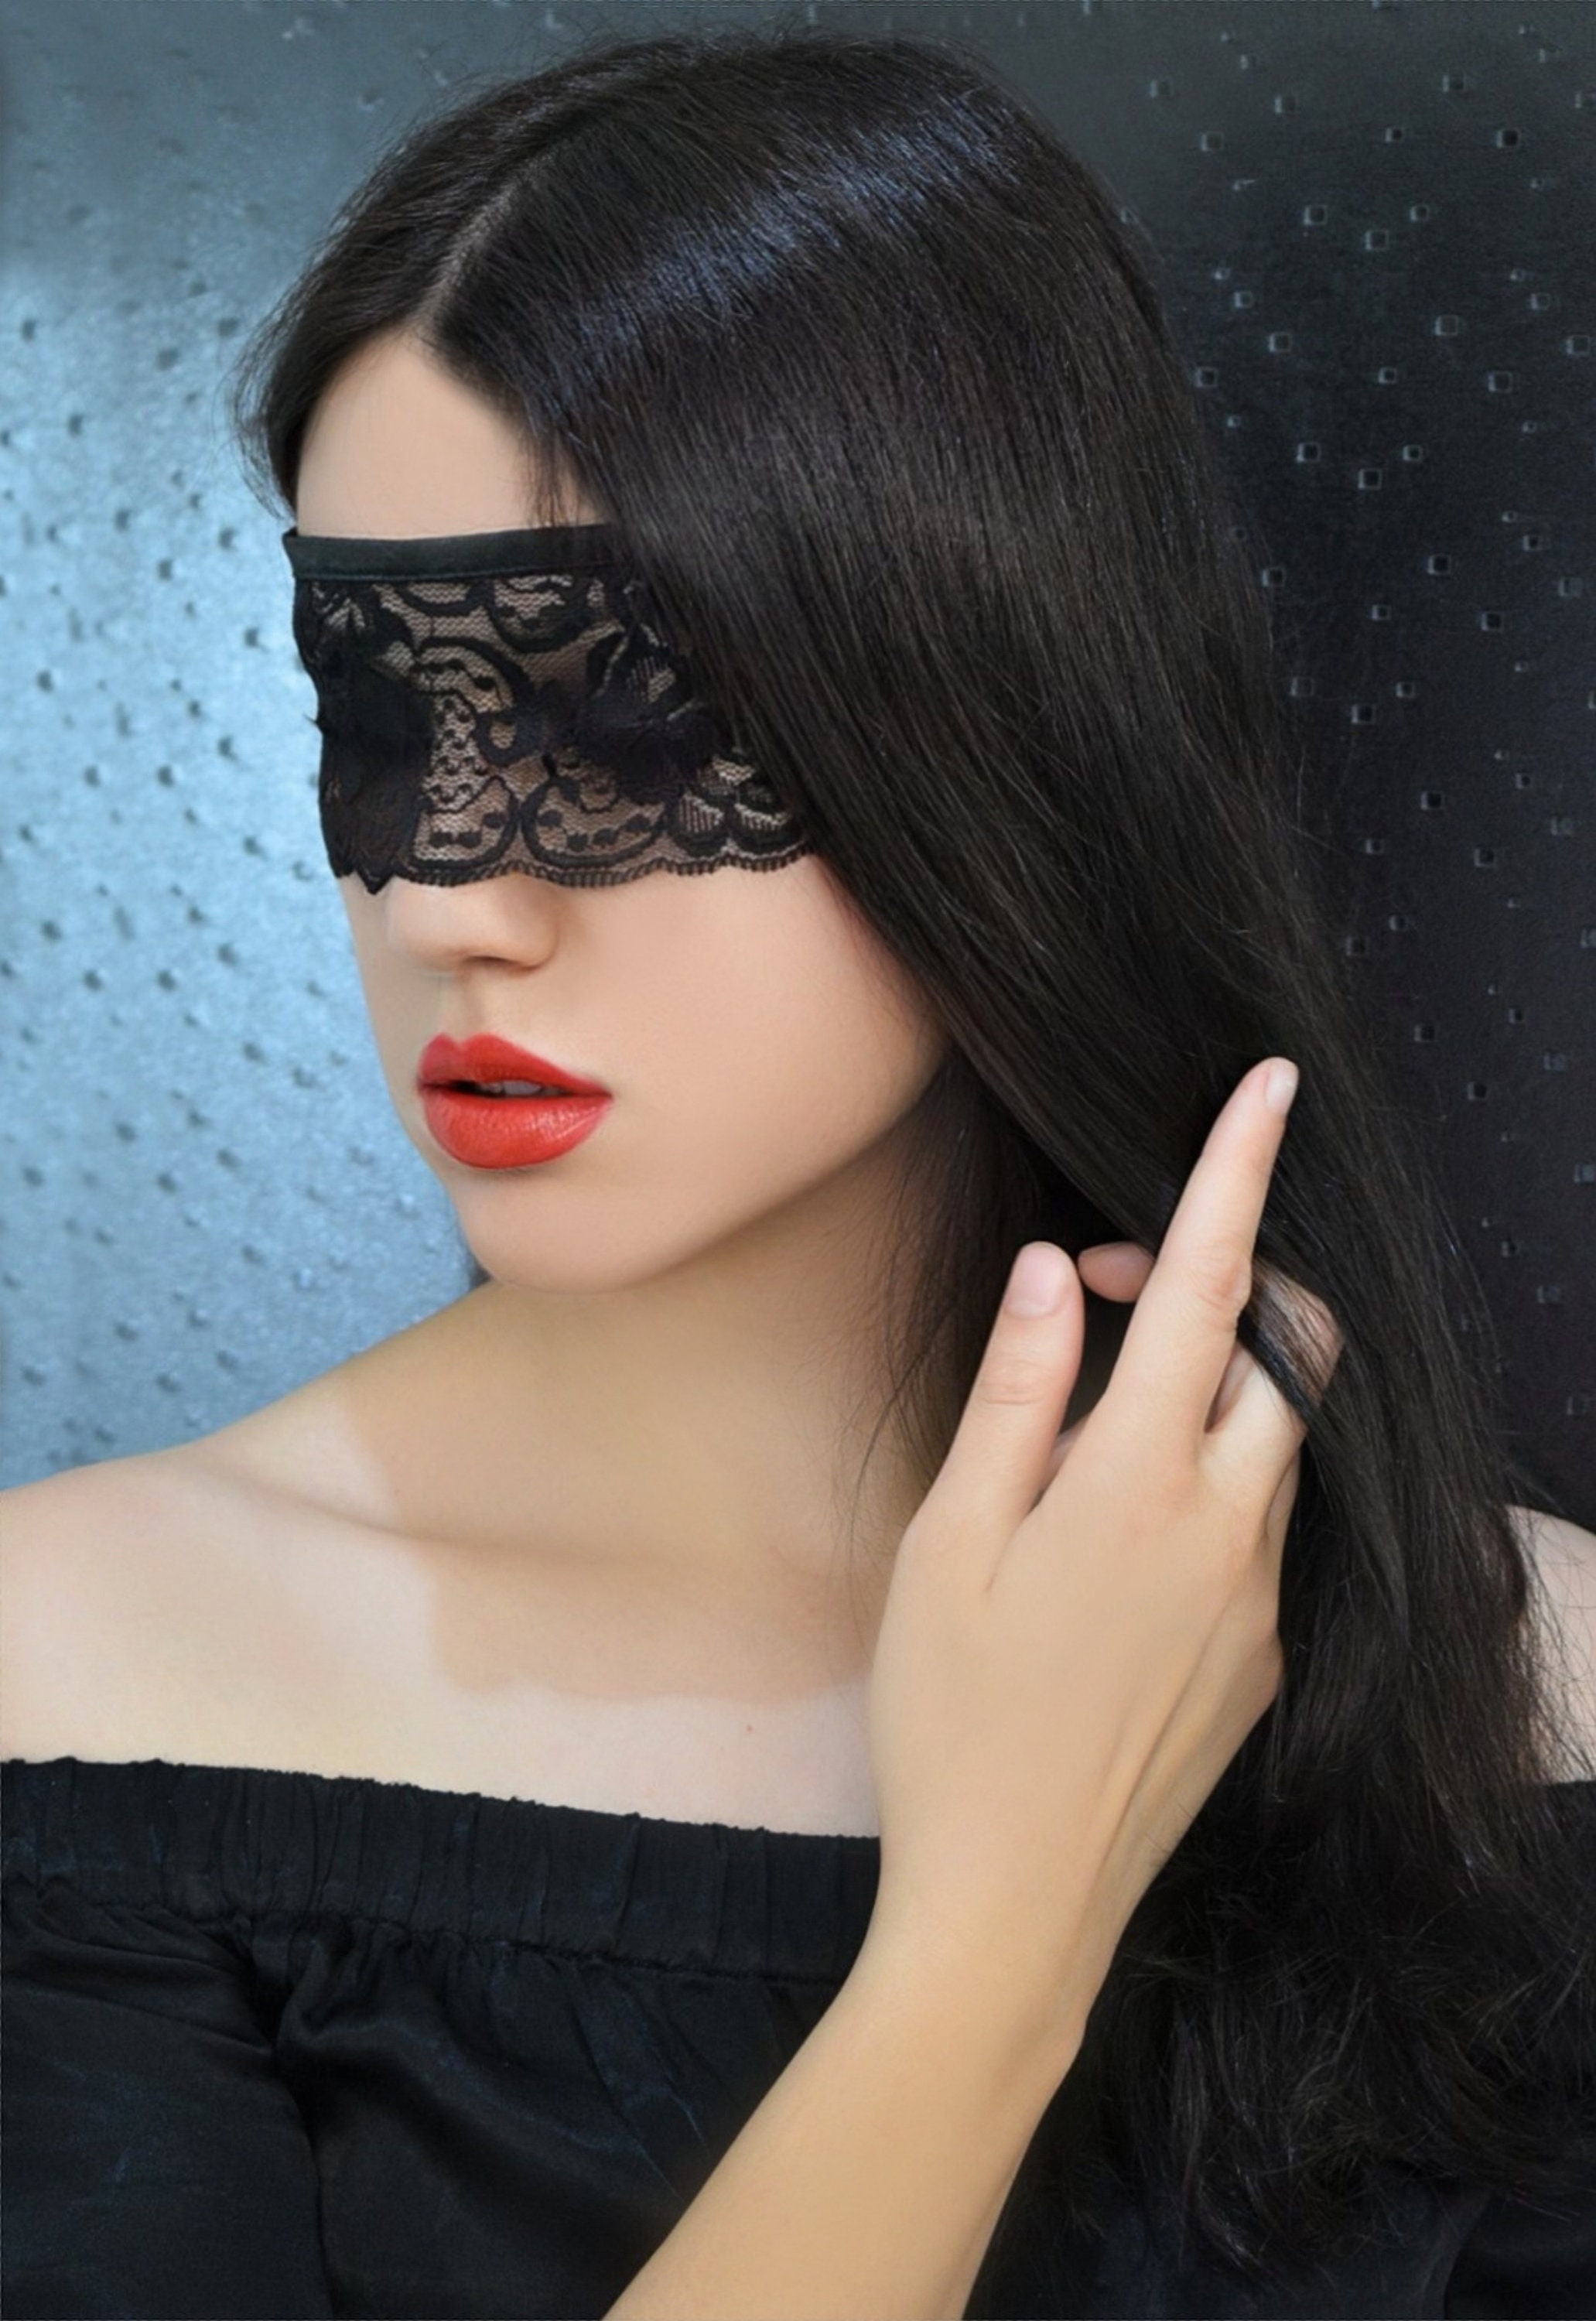 White Lace Blindfold Mask/ Sexy Eye Mask/ Kinky/ Seductive/ 